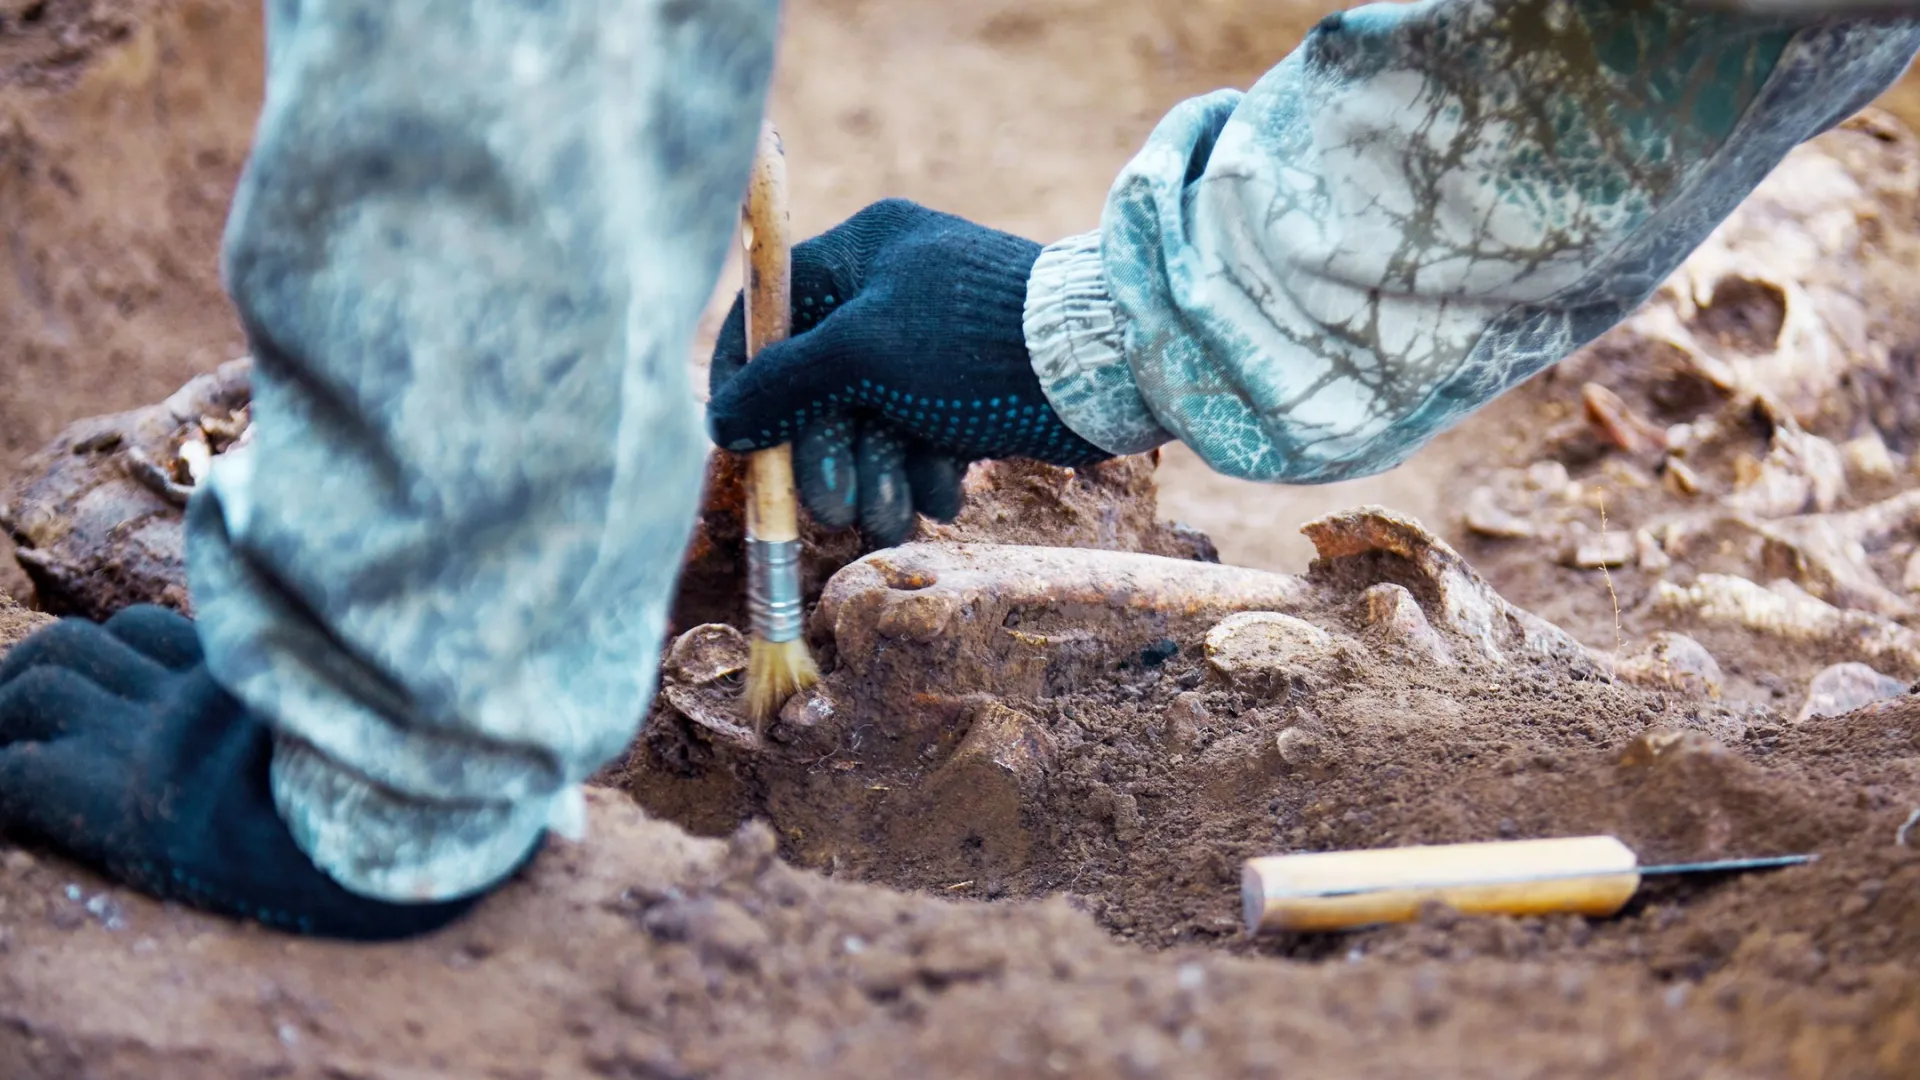 Археологи установили возраст захоронения на Ямале. Фото: Xolodan/Shutterstock/Fotodom